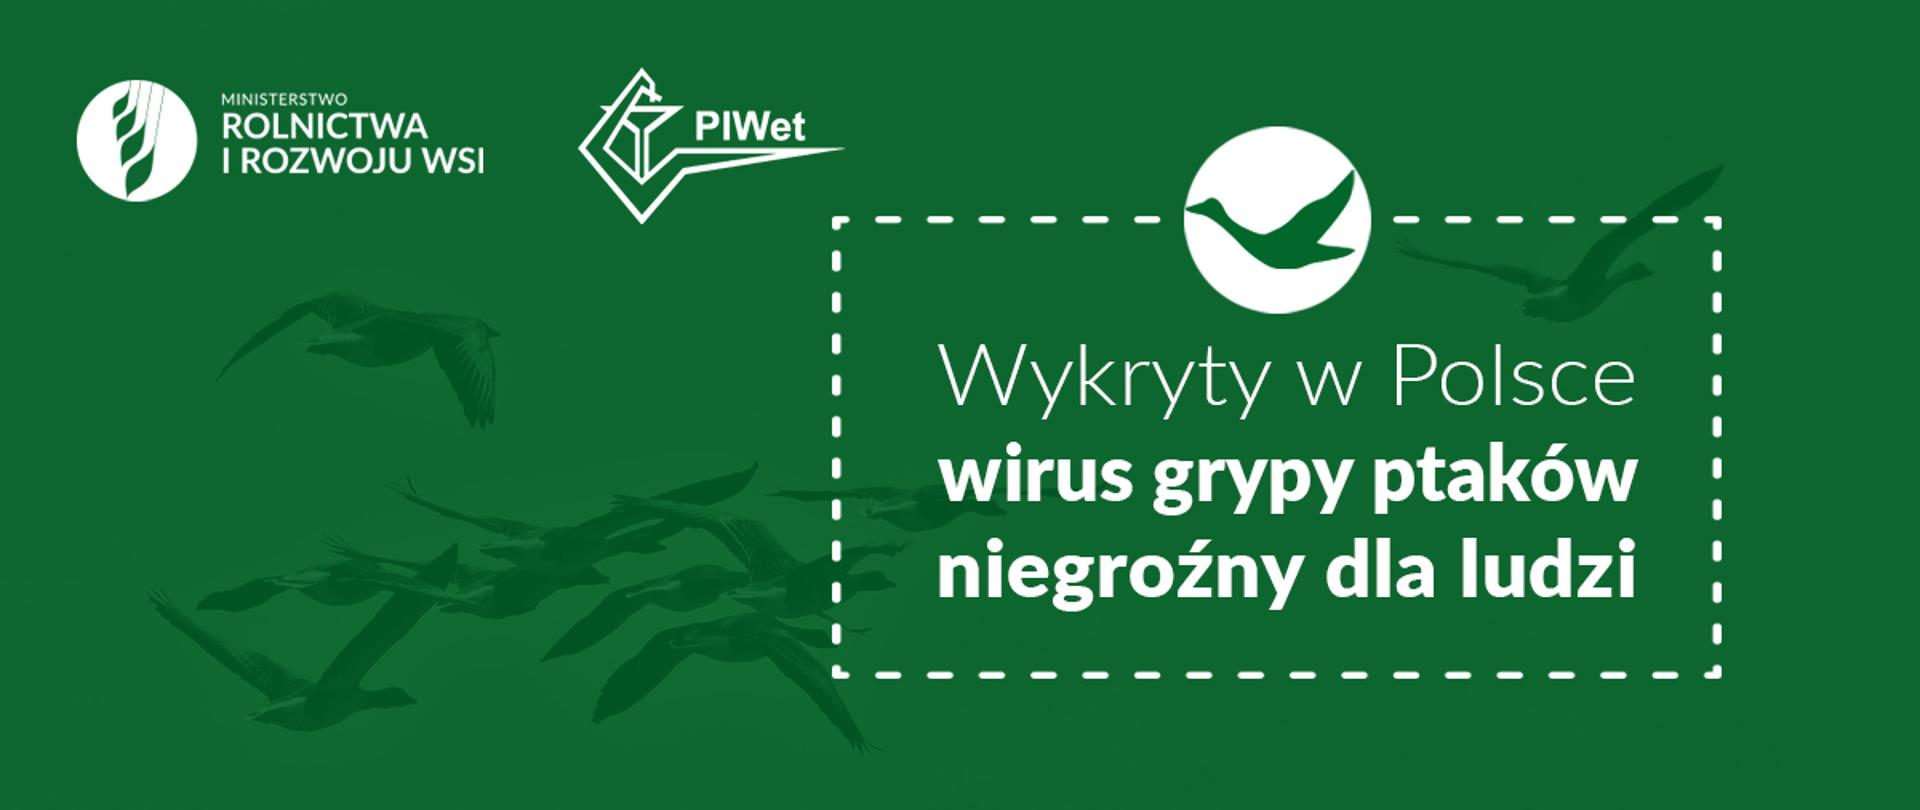 Grafika do komunikatu "Wykryty w Polsce wirus grypy ptaków nie jest groźny dla ludzi".
Lecące ptaki.